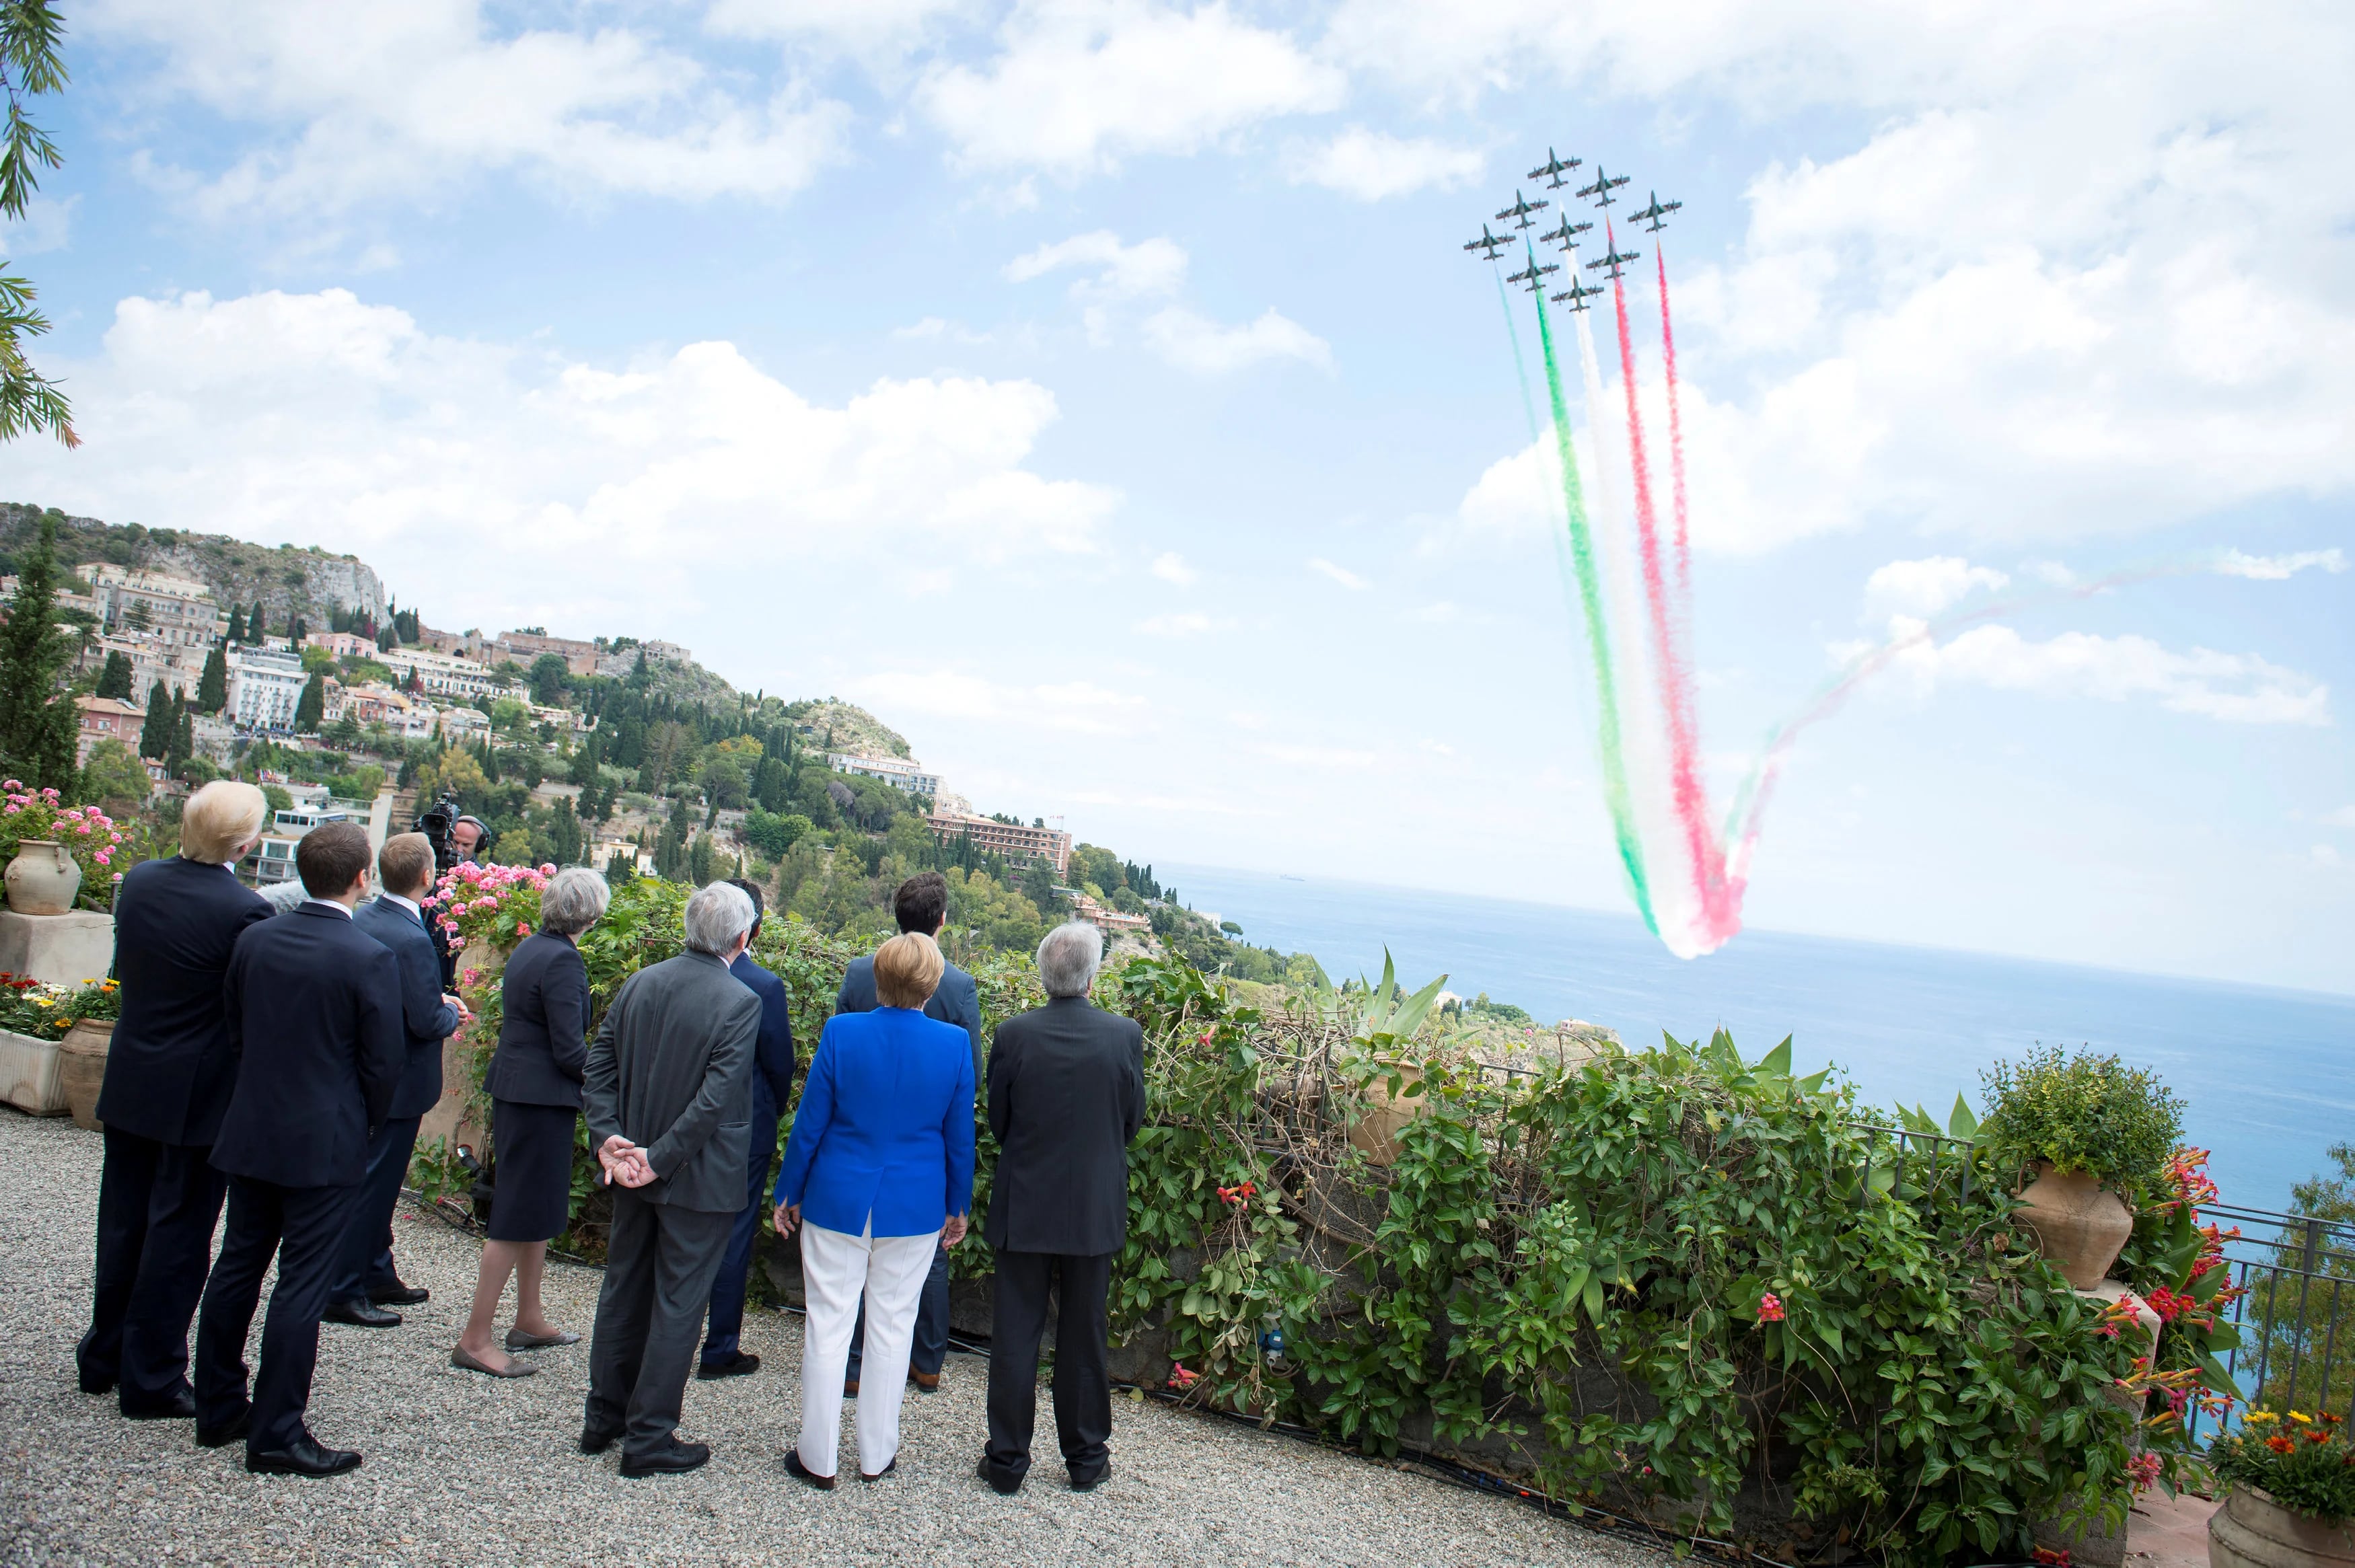 Líderes del G7 osbveran a un escuadrón de la fuerza aérea italiana desplegar una bandera italiana por los aires.